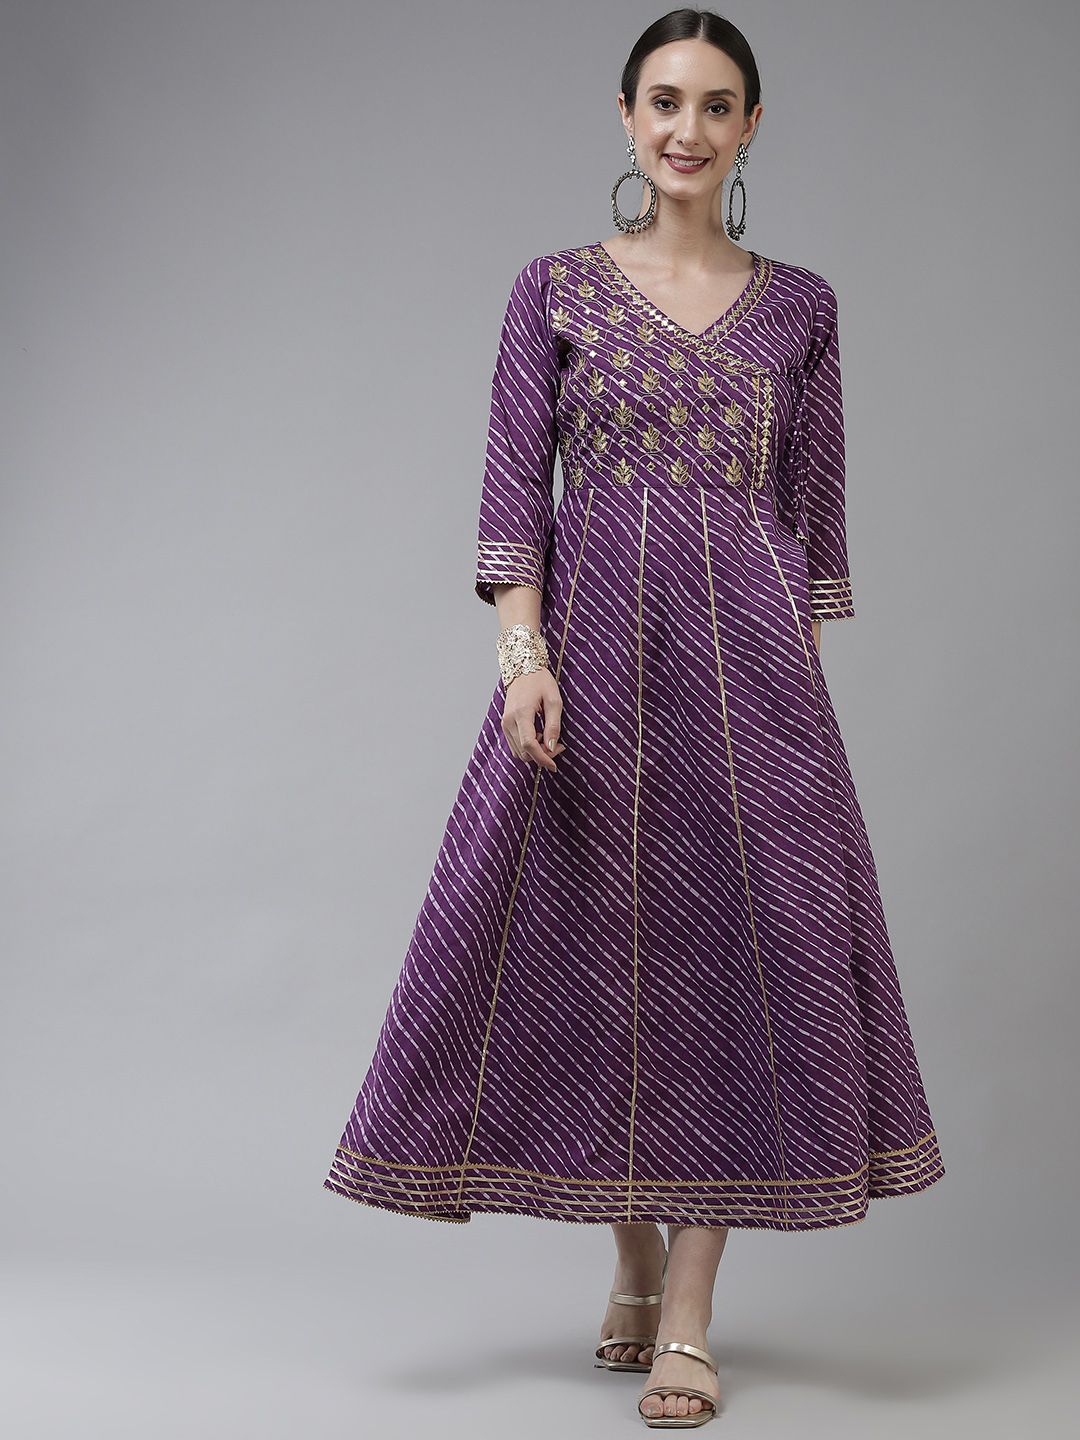 Yufta Purple Ethnic Motifs Embroidered Gotta Patti Pure Cotton Ethnic Maxi Dress Price in India